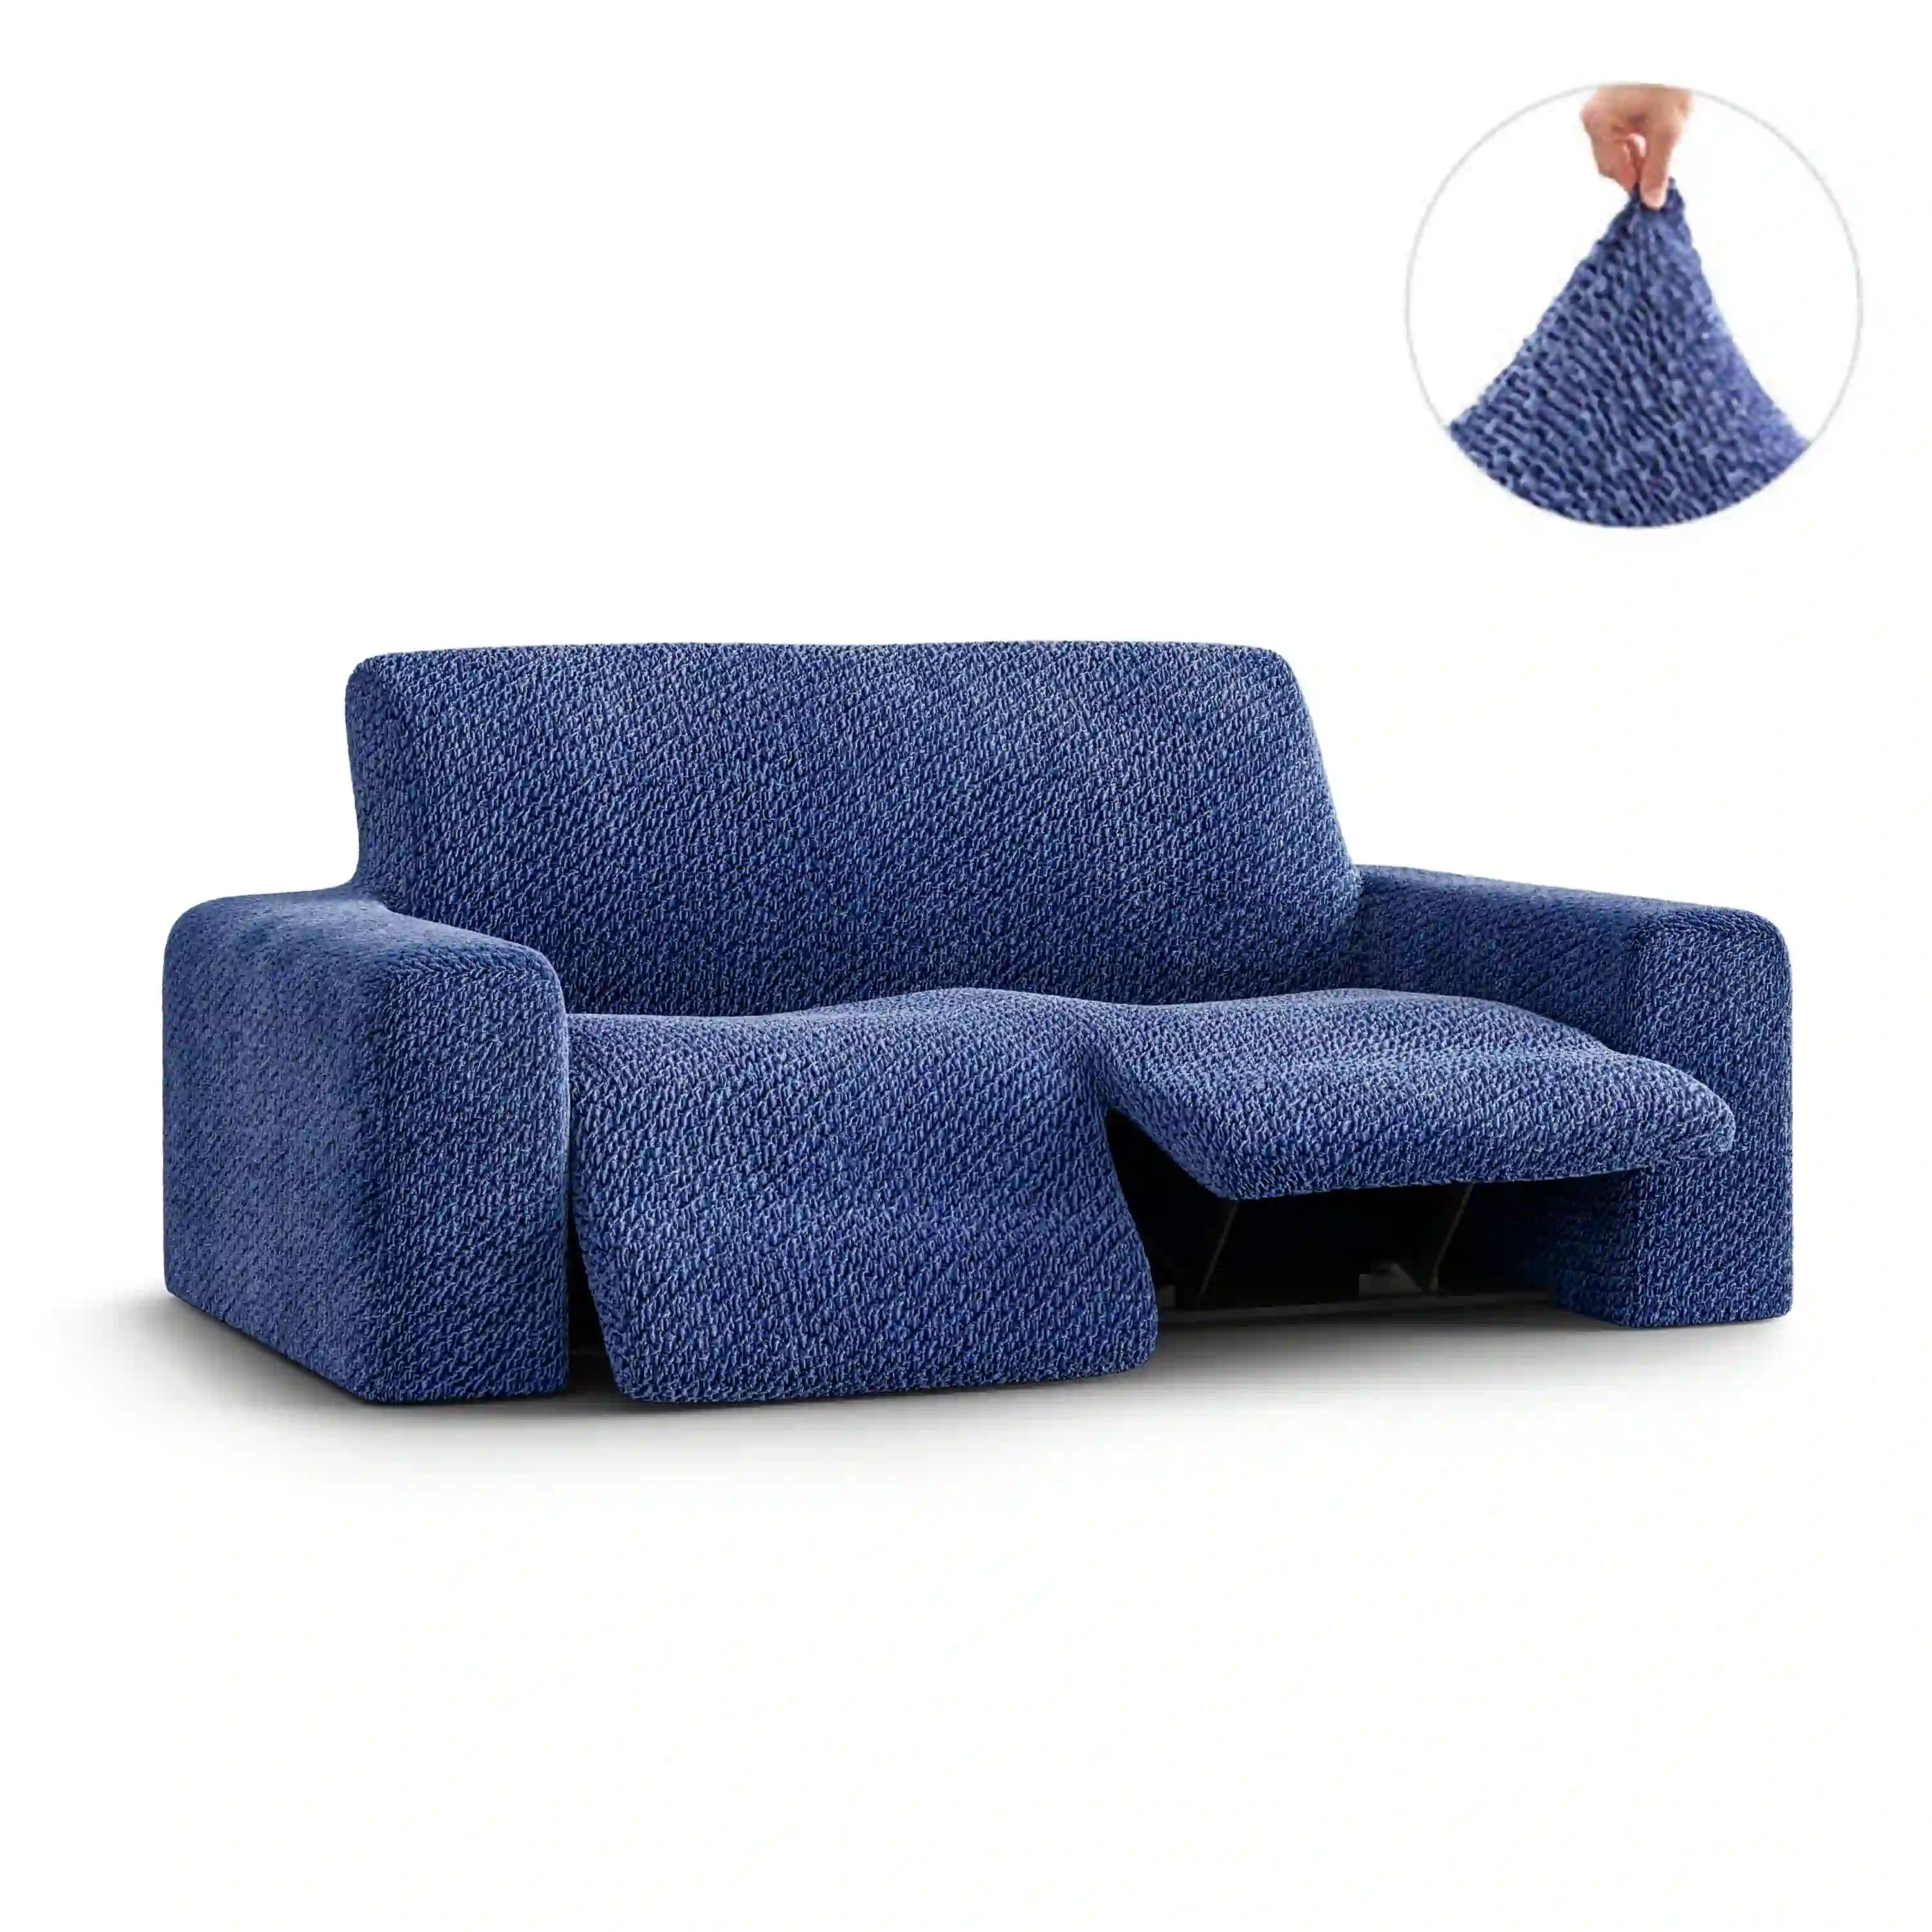 2 Seater Recliner Sofa Cover - Blue, Velvet